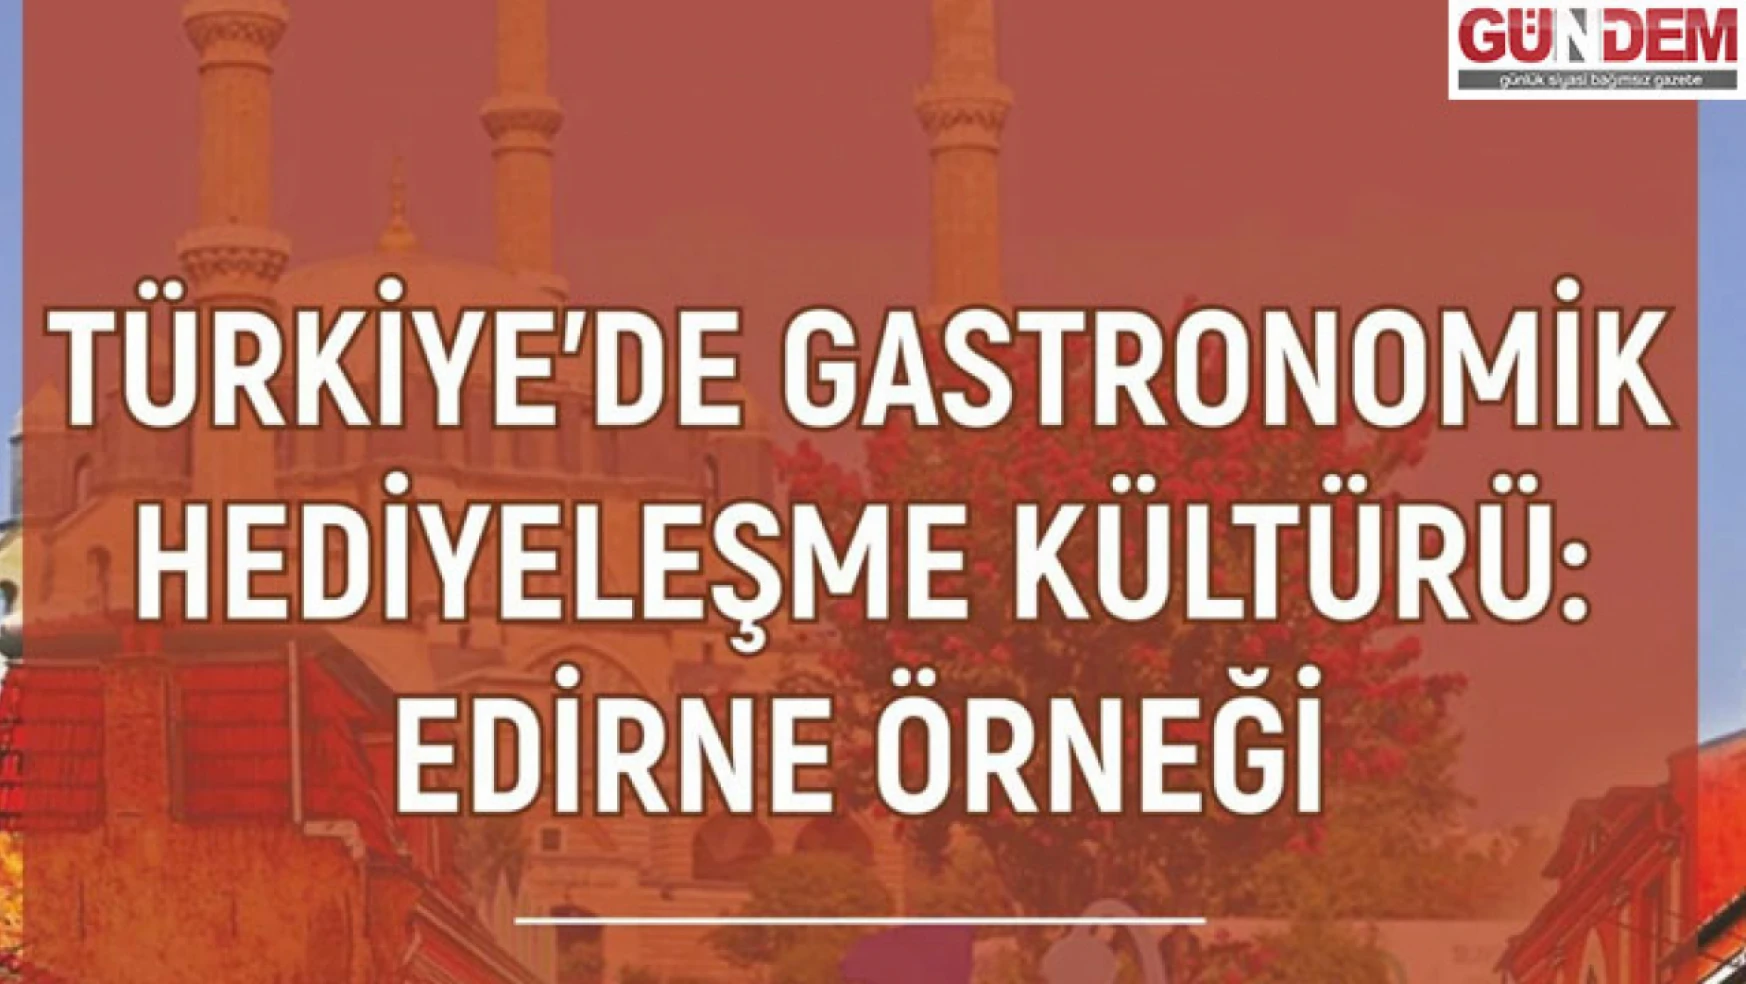 'Türkiye'de Gastronomik Hediyeleşme Kültürü: Edirne Örneği' kitabı yayımlandı